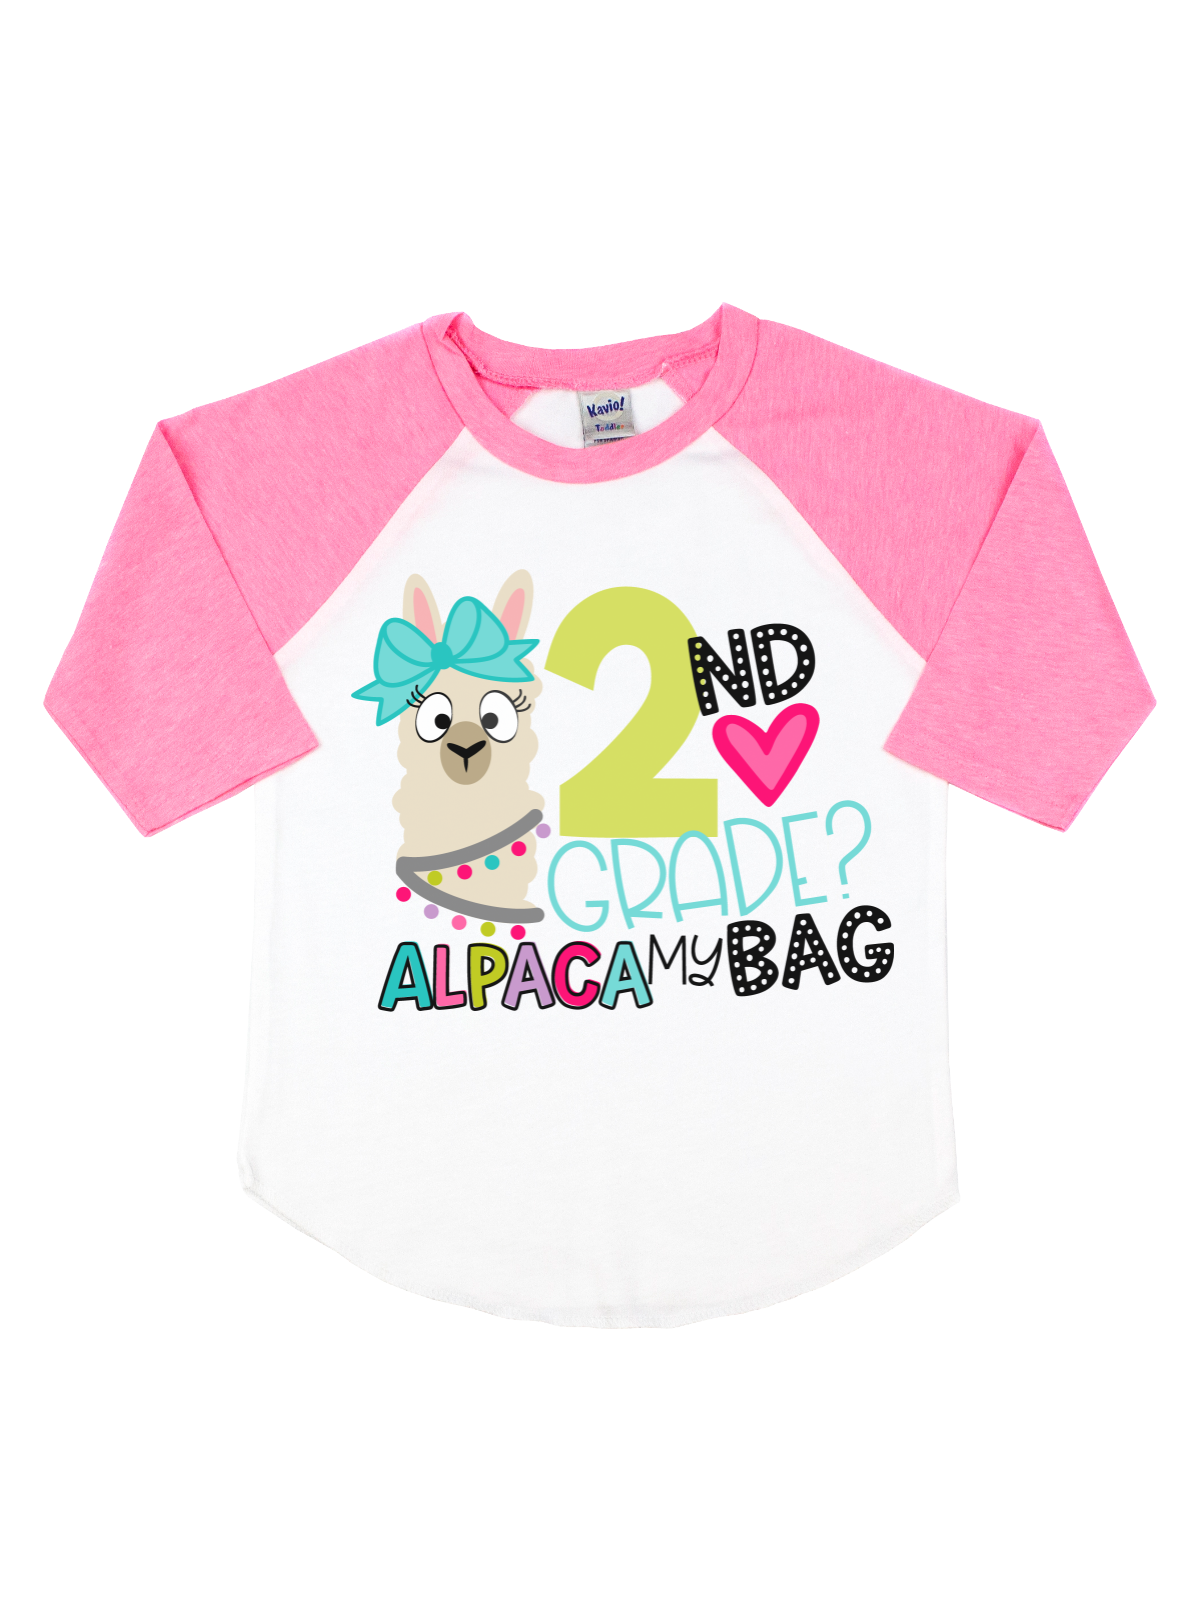 Second Grade Alpaca My Bag Girls Shirt